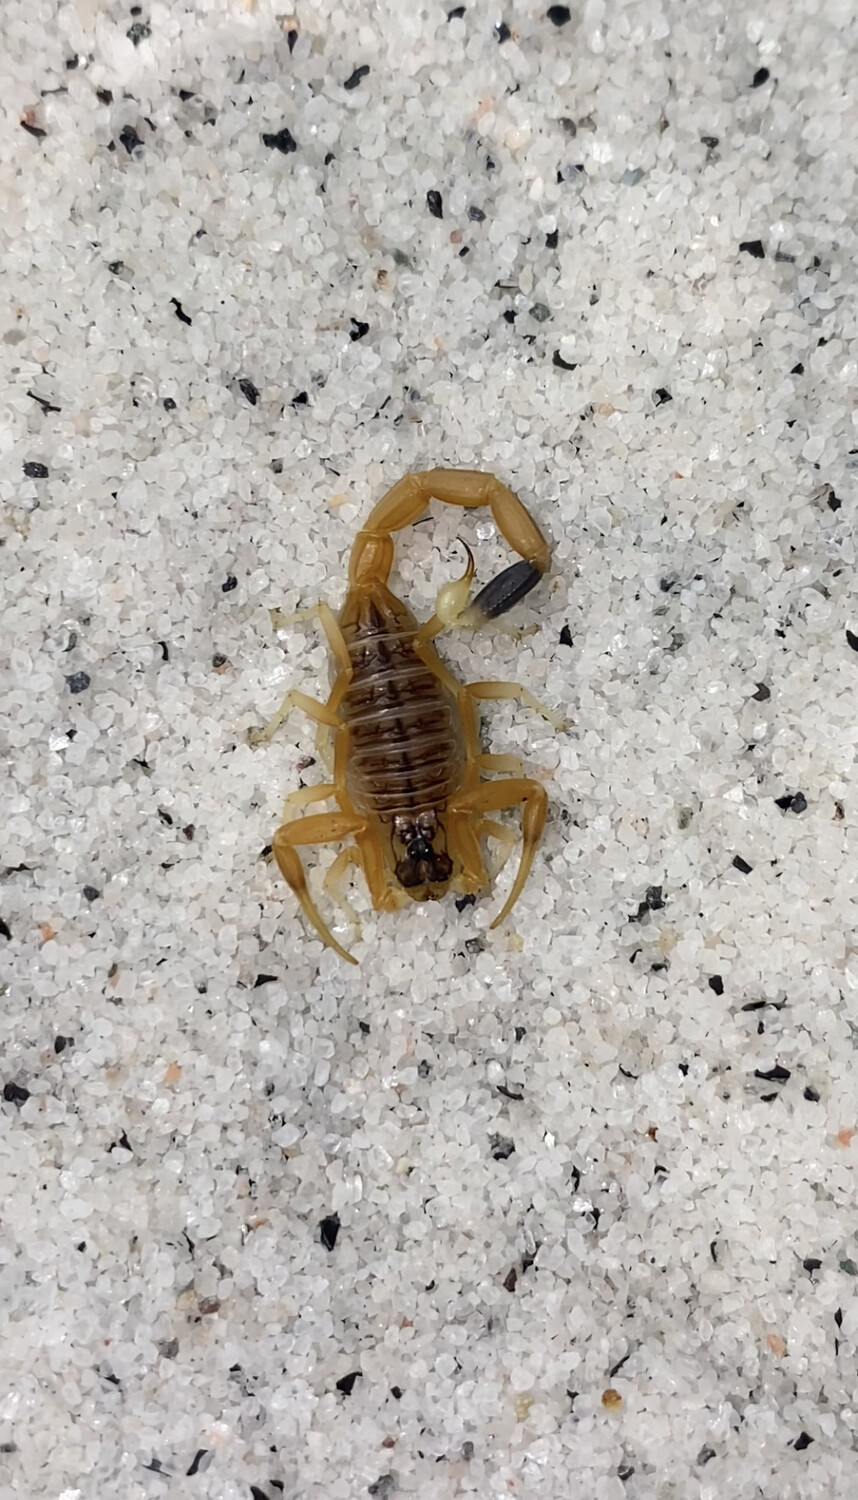 Leiurus quinquestriatus “Red Sea” (Death Stalker Scorpion)